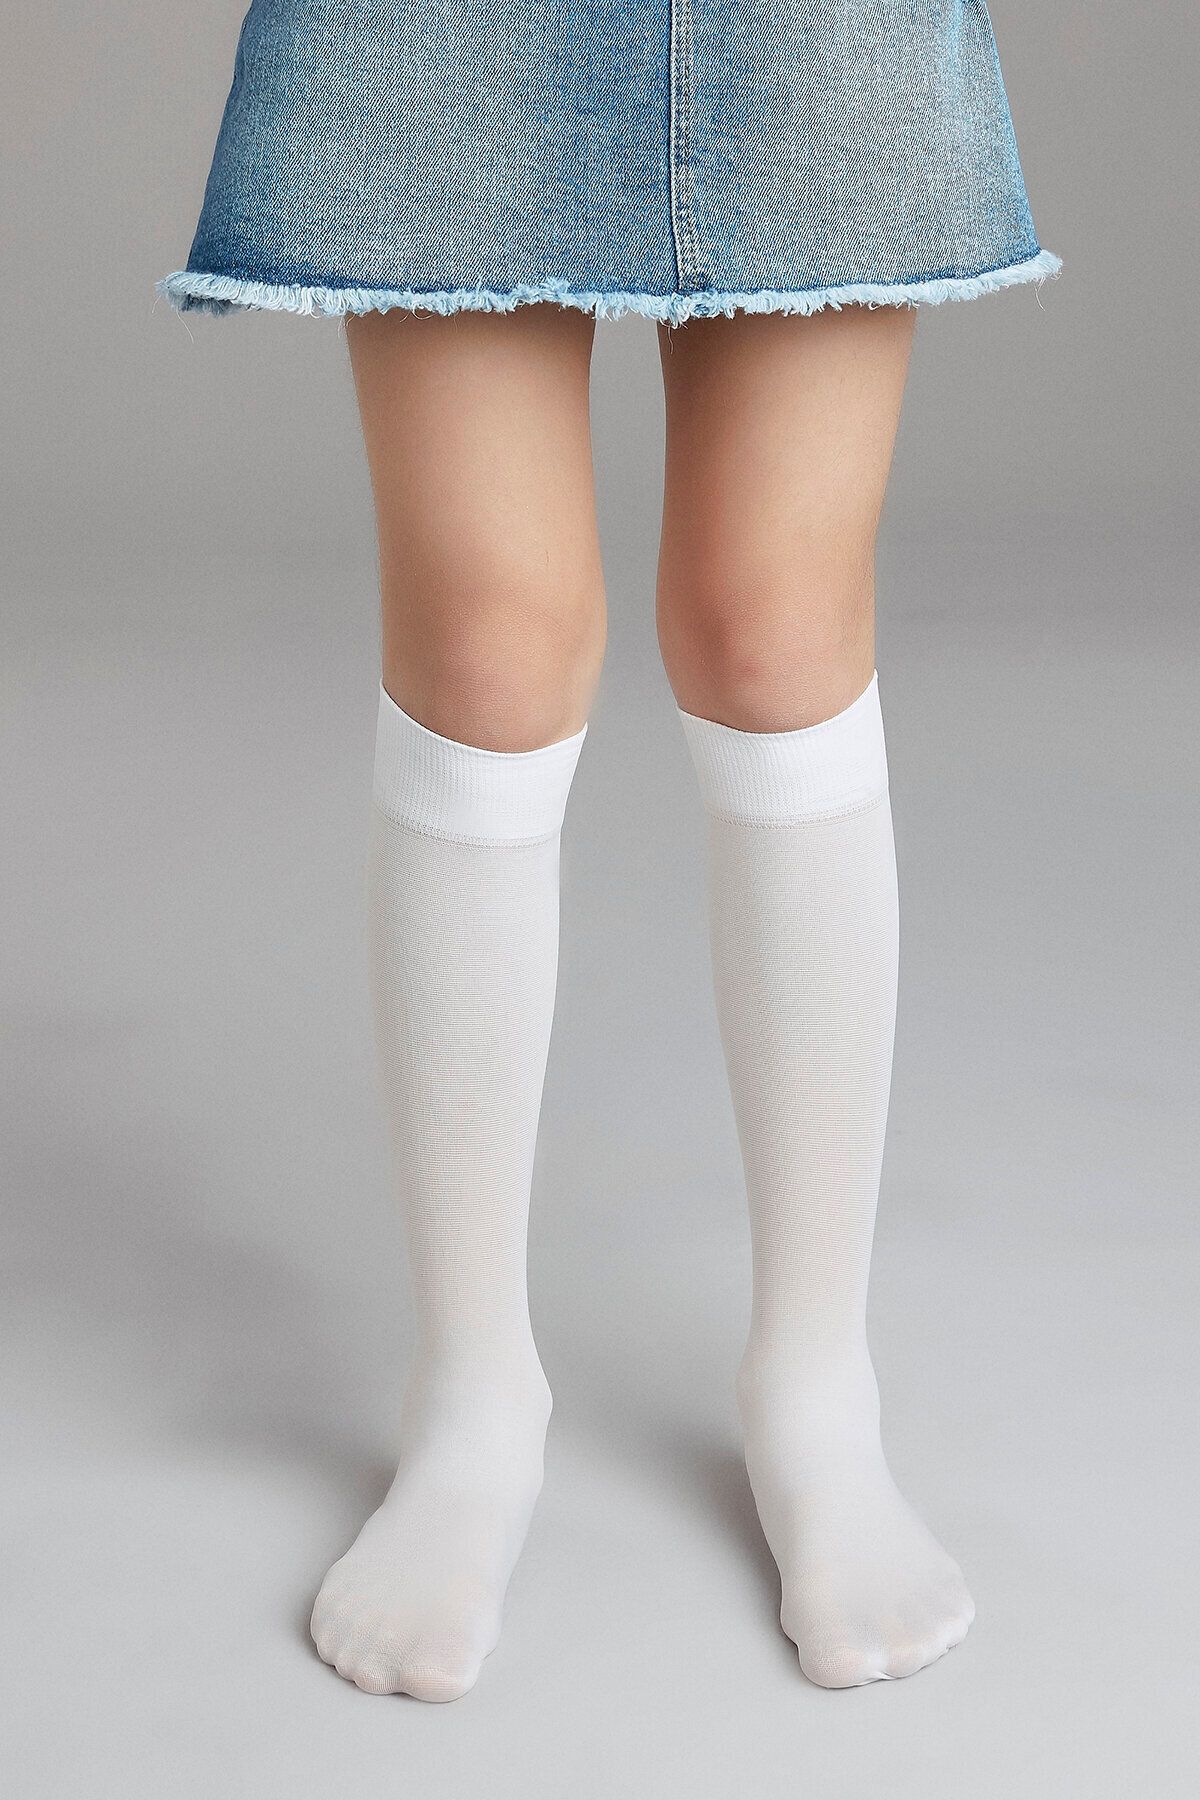 Penti Beyaz Kız Çocuklu Mikro 40 Pantolon Çorabı